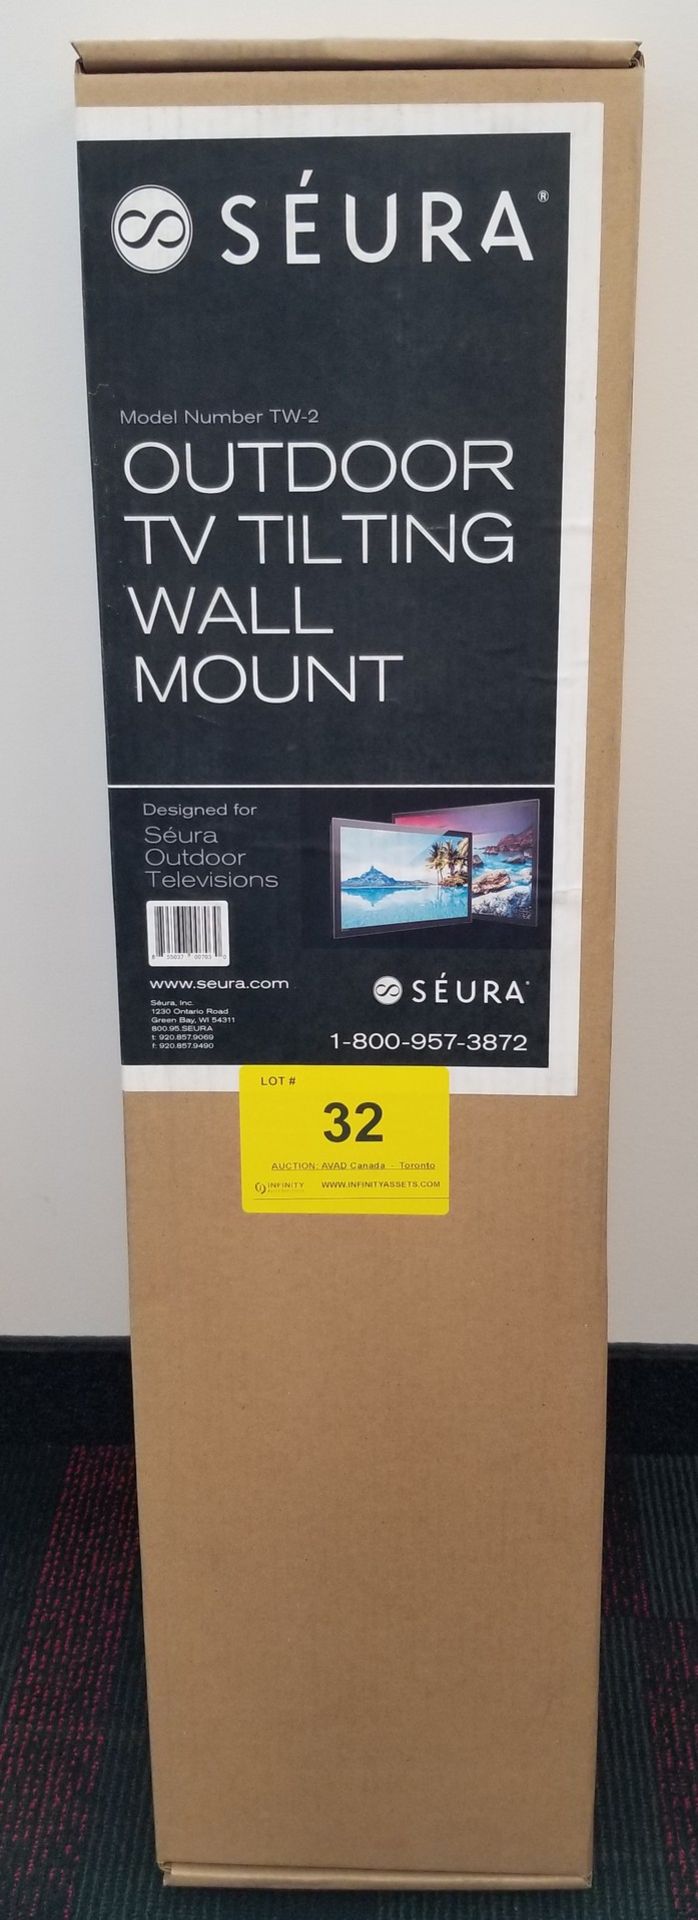 SEURA, OUTDOOR TV TILTING WALL MOUNT, MODEL: TW-2 - (BNIB) MSRP $299